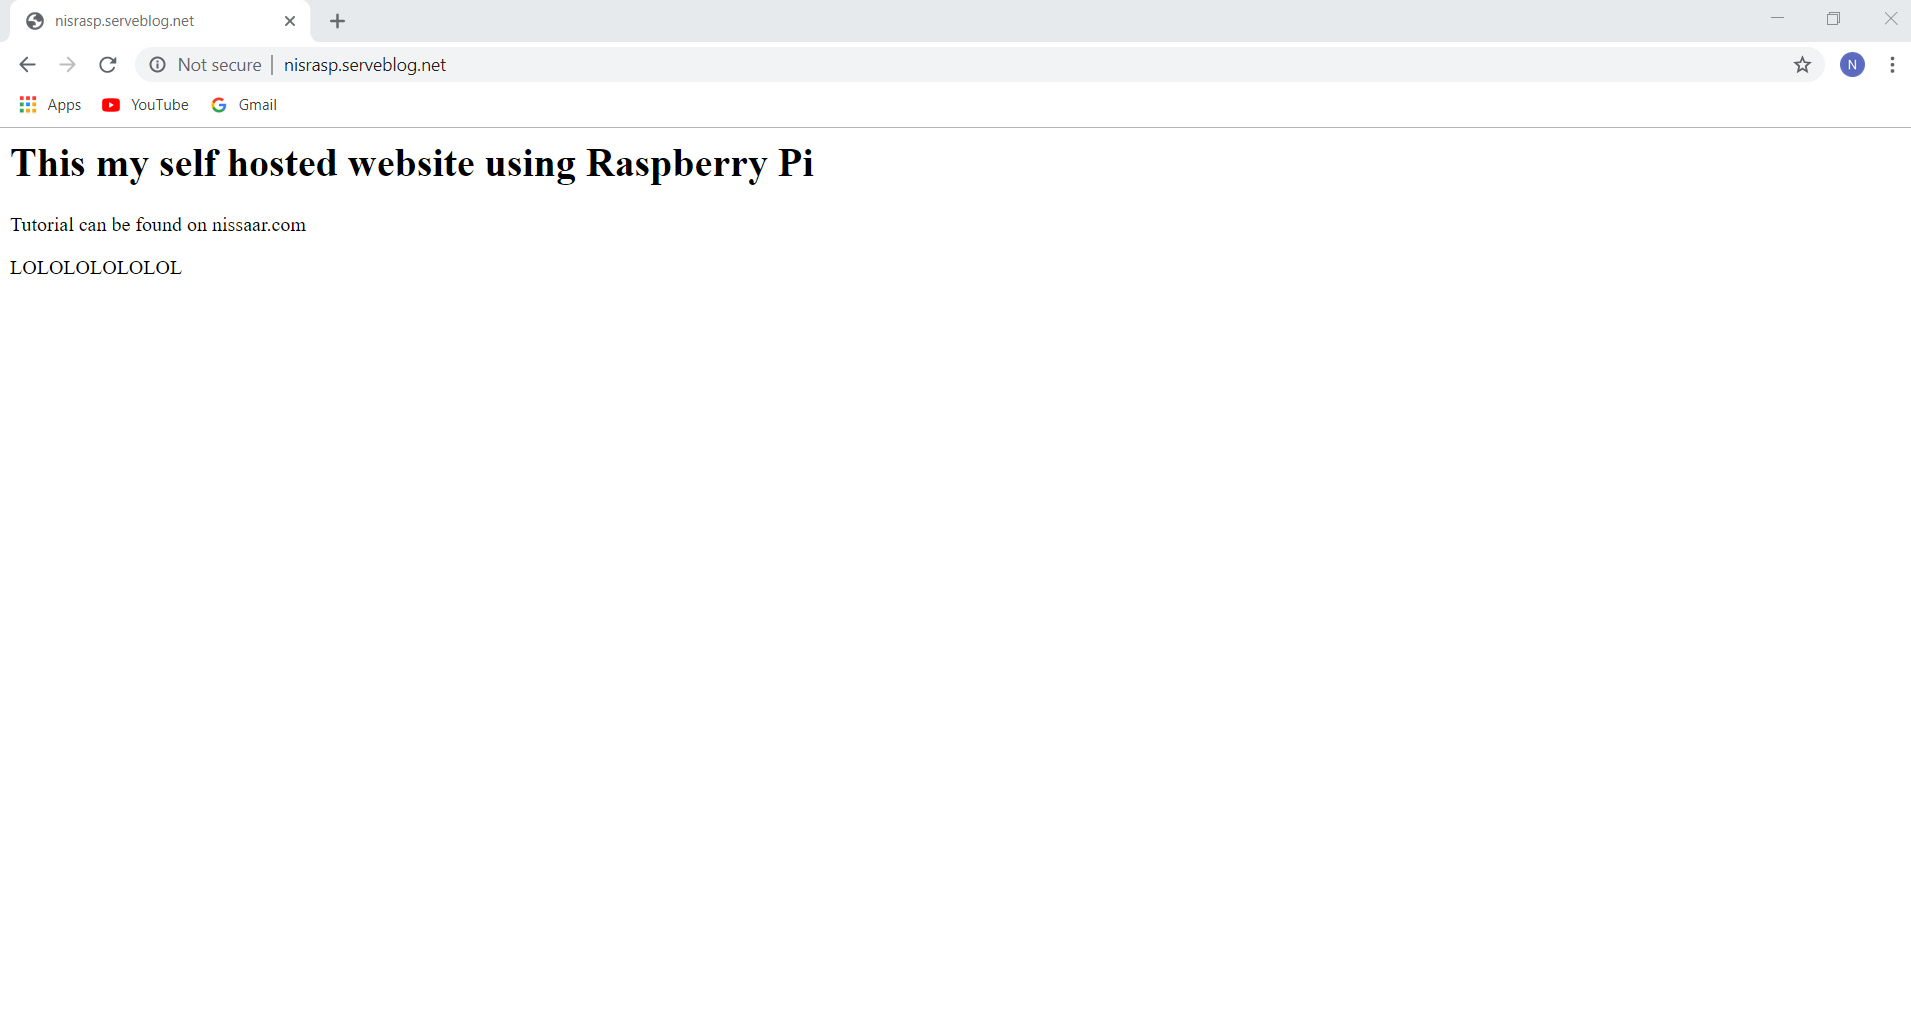 Hosting website using Raspberry Pi as Server